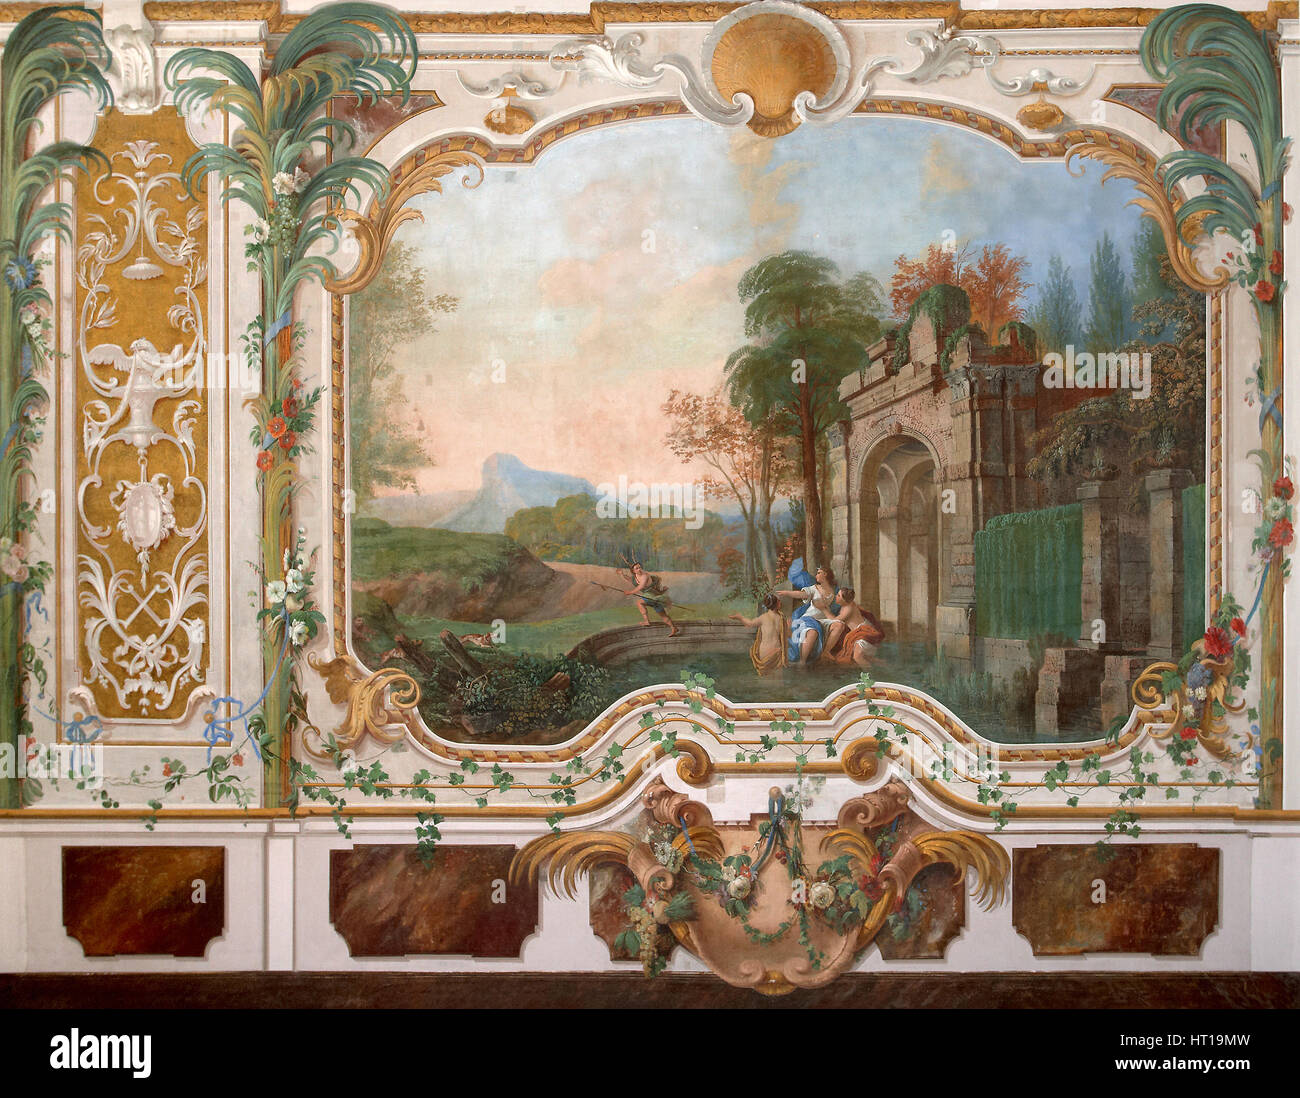 La peinture murale dans le salon de le palais chinois à Oranienbaum, milieu du 18e siècle. Artiste : Anonyme Banque D'Images